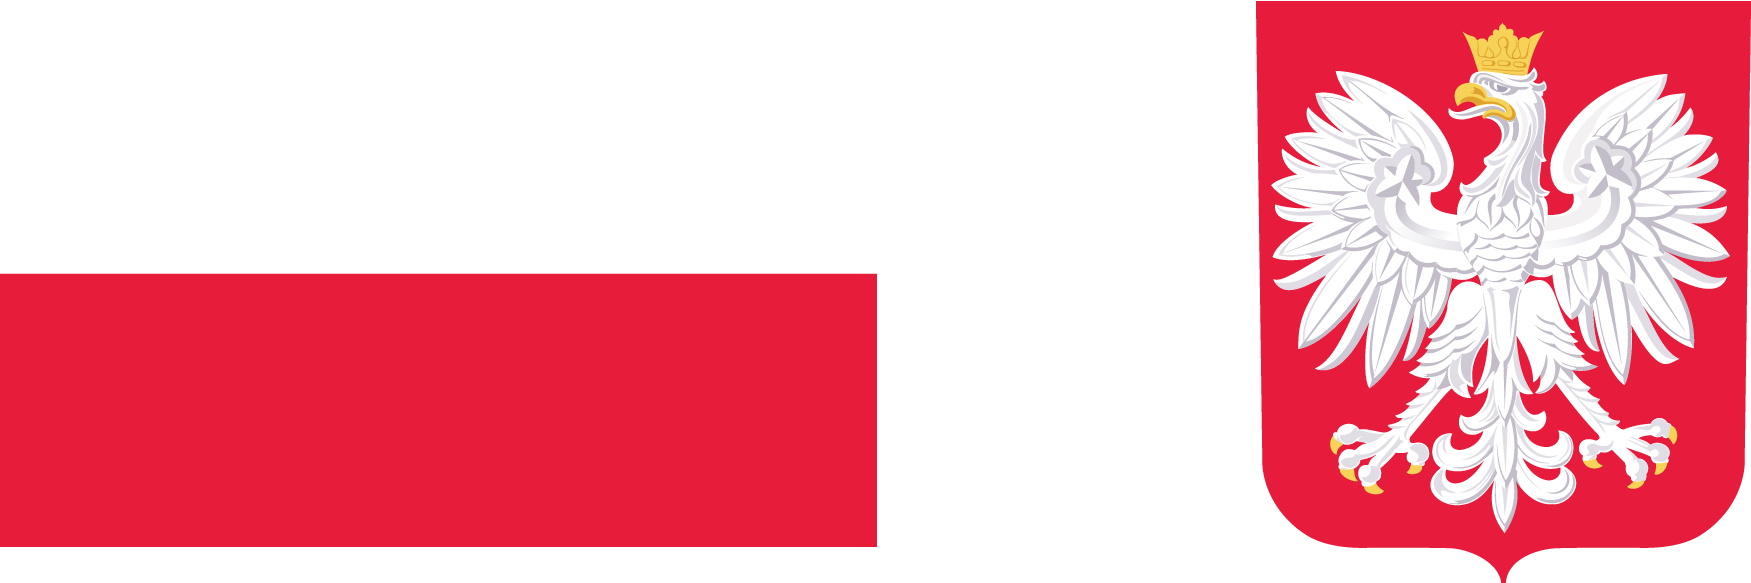 Flaga Polski. Godło Polski